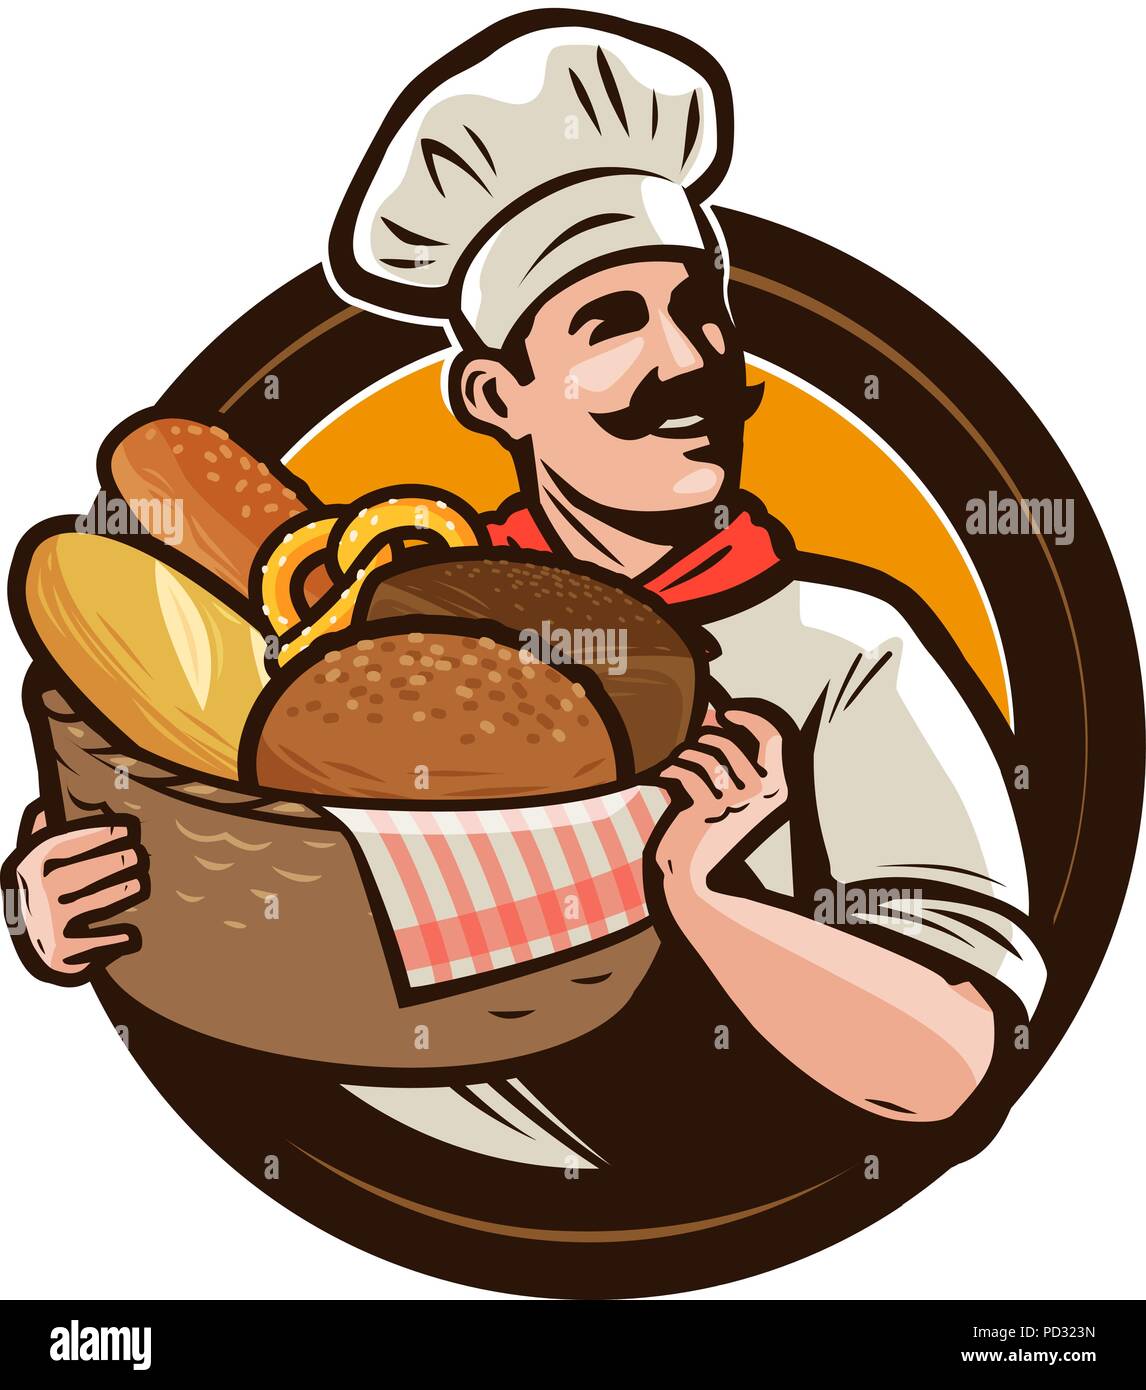 Panadería, bakehouse logotipo o etiqueta. Baker con una cesta de mimbre de pan recién horneado. Ilustración vectorial Ilustración del Vector